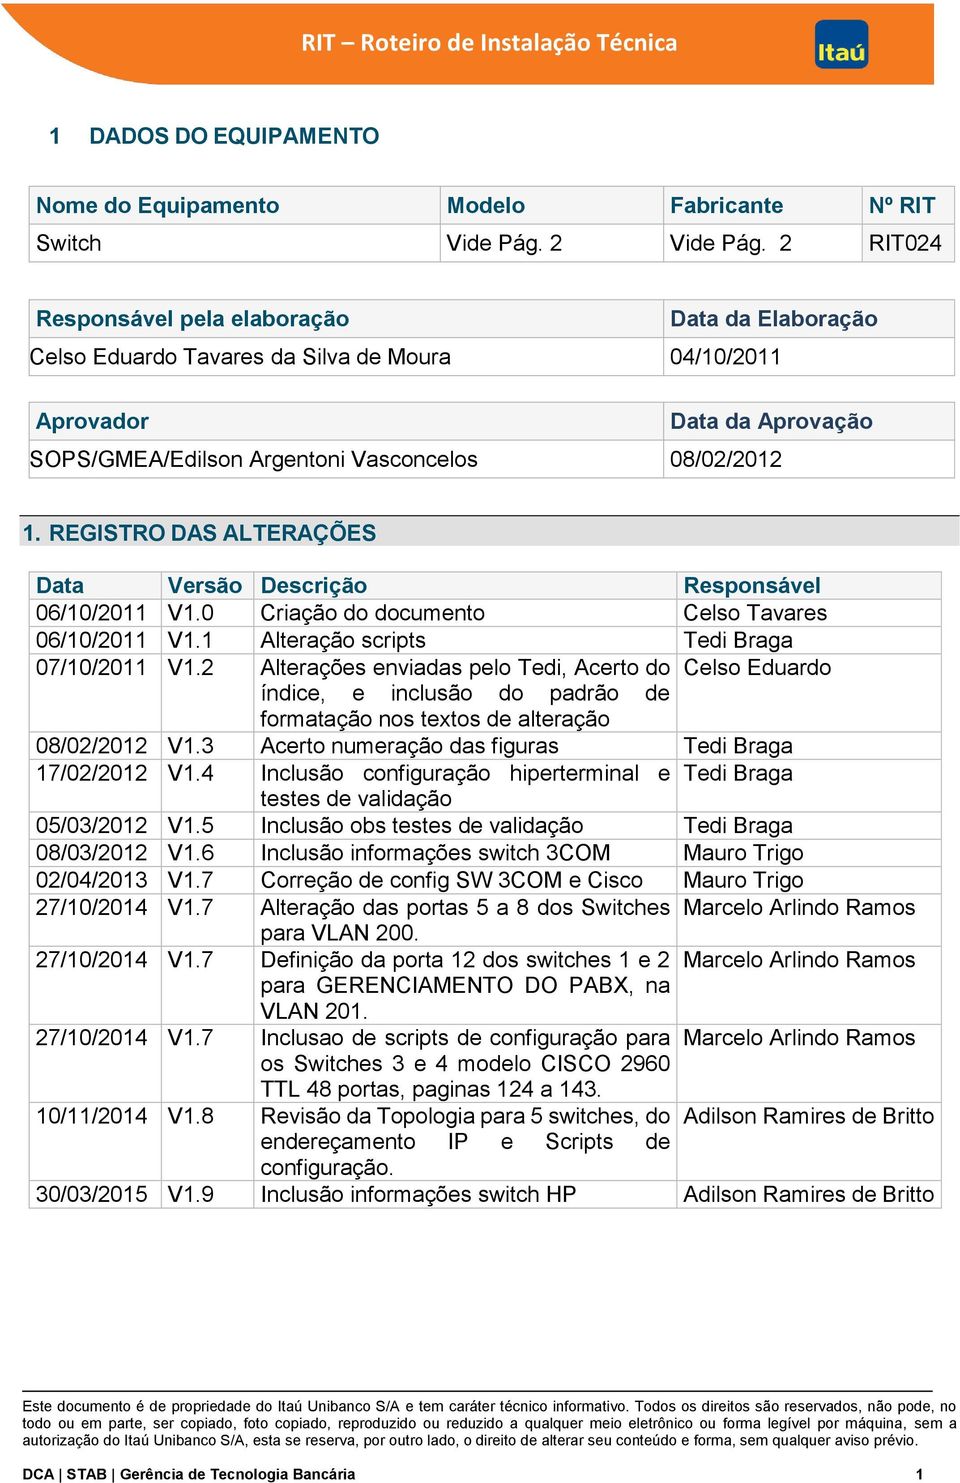 REGISTRO DAS ALTERAÇÕES Data Versão Descrição Responsável 06/10/2011 V1.0 Criação do documento Celso Tavares 06/10/2011 V1.1 Alteração scripts Tedi Braga 07/10/2011 V1.